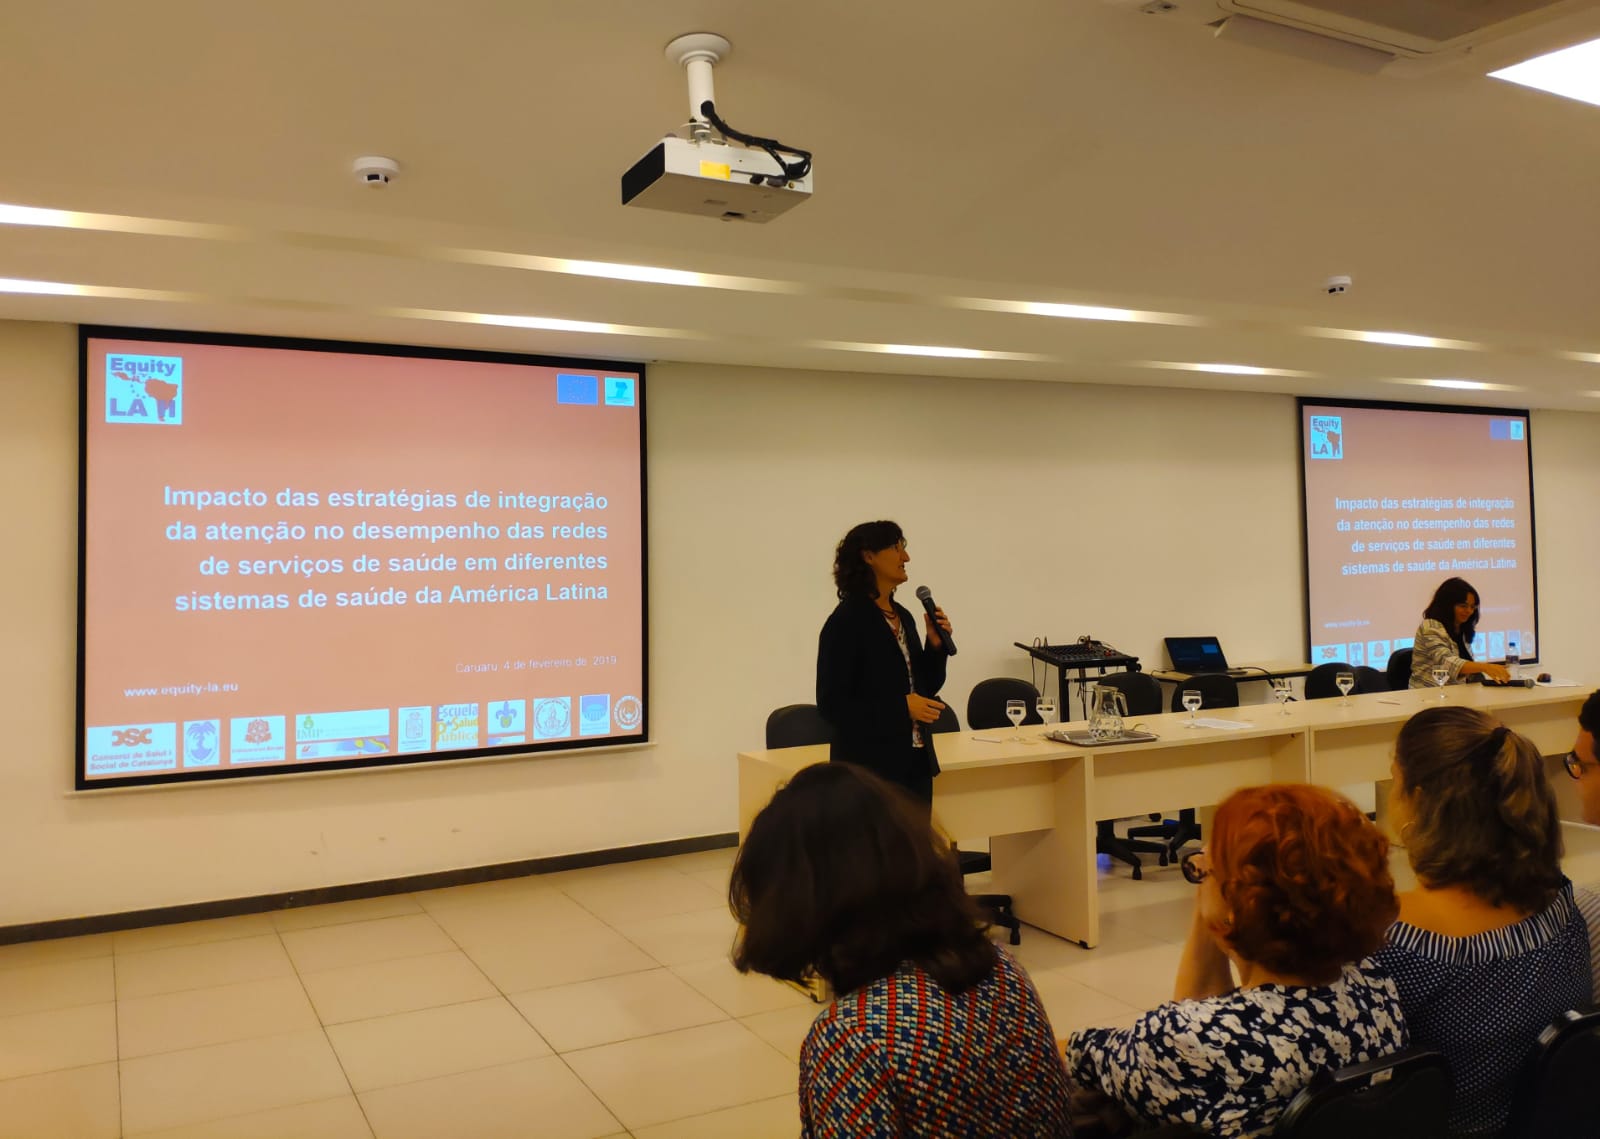 Sucesso do seminário público realizado no Brasil sobre experiências de integração da atenção nos serviços de saúde na América Latina 